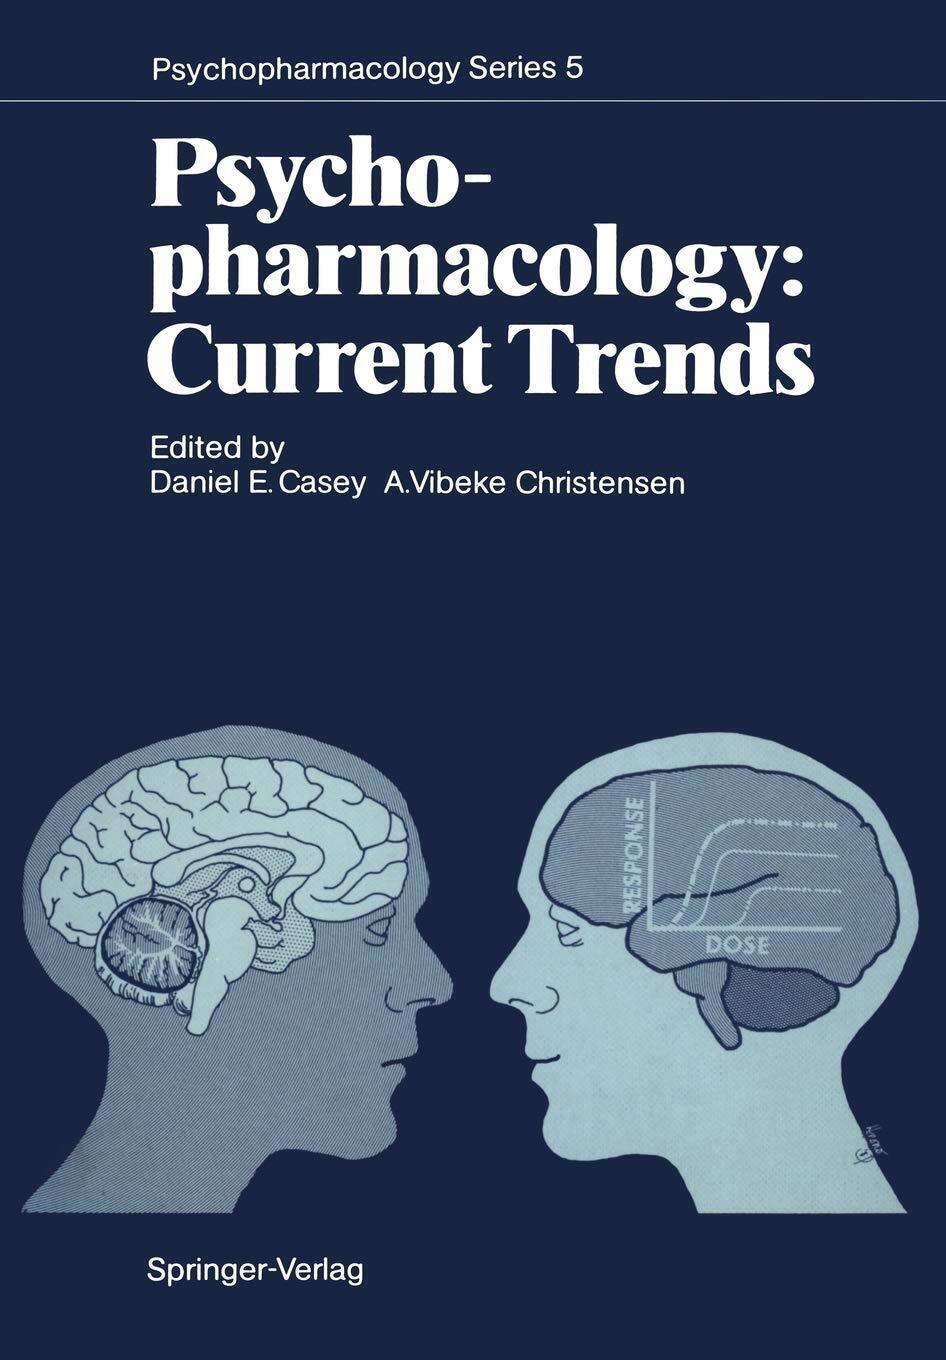 Psychopharmacology: Current Trends - Daniel E. Casey - Springer, 2011